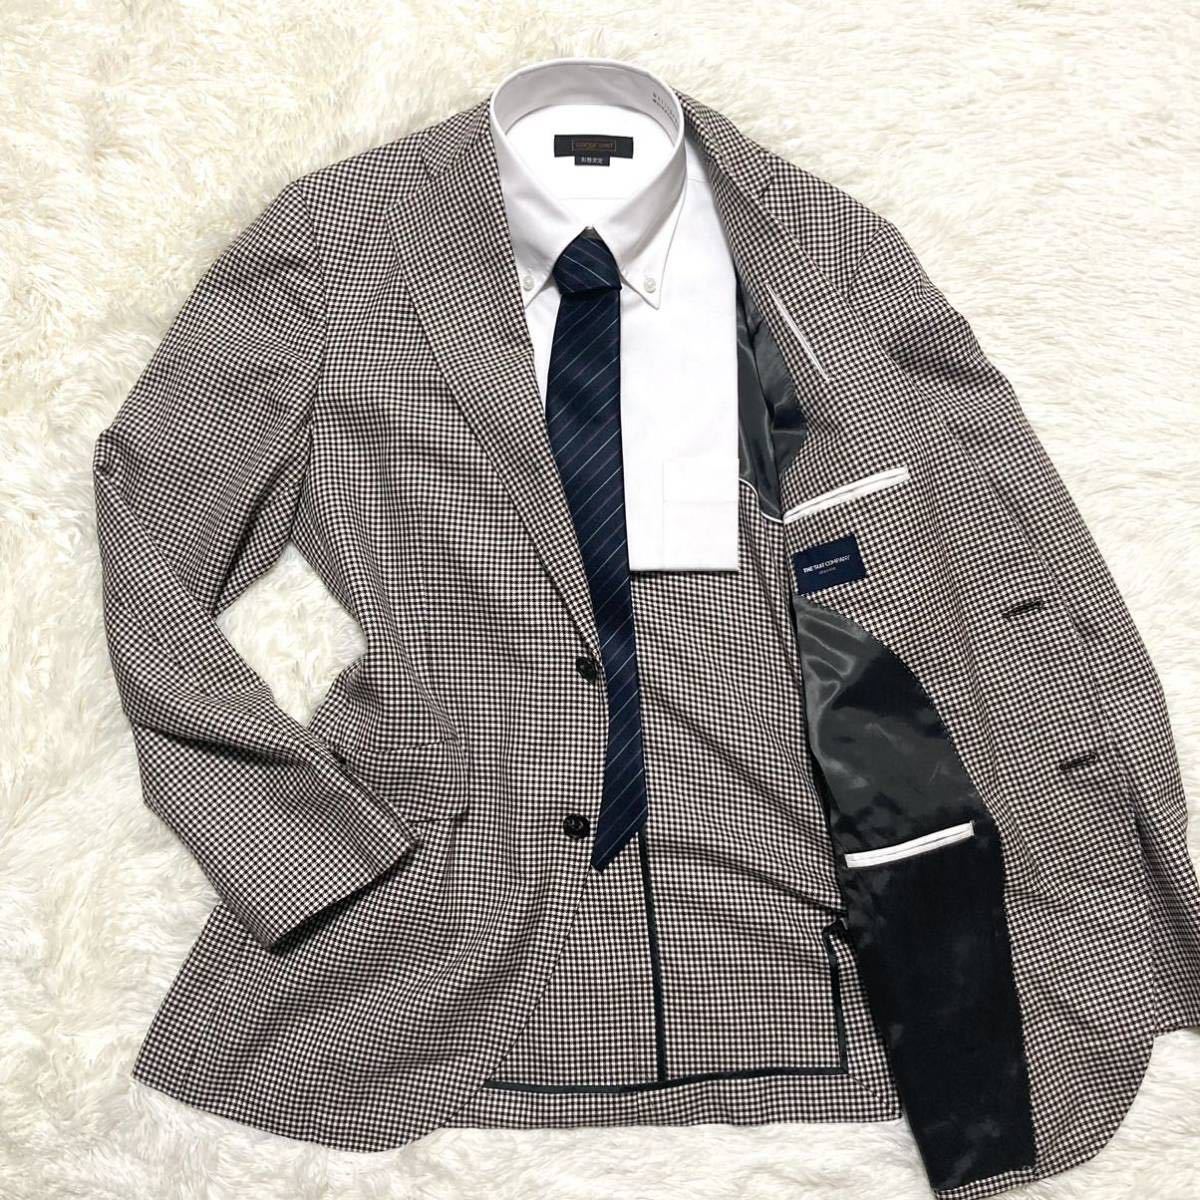 熱い販売 【シルク混】The Suit グレー 2ピースセットアップスーツ 